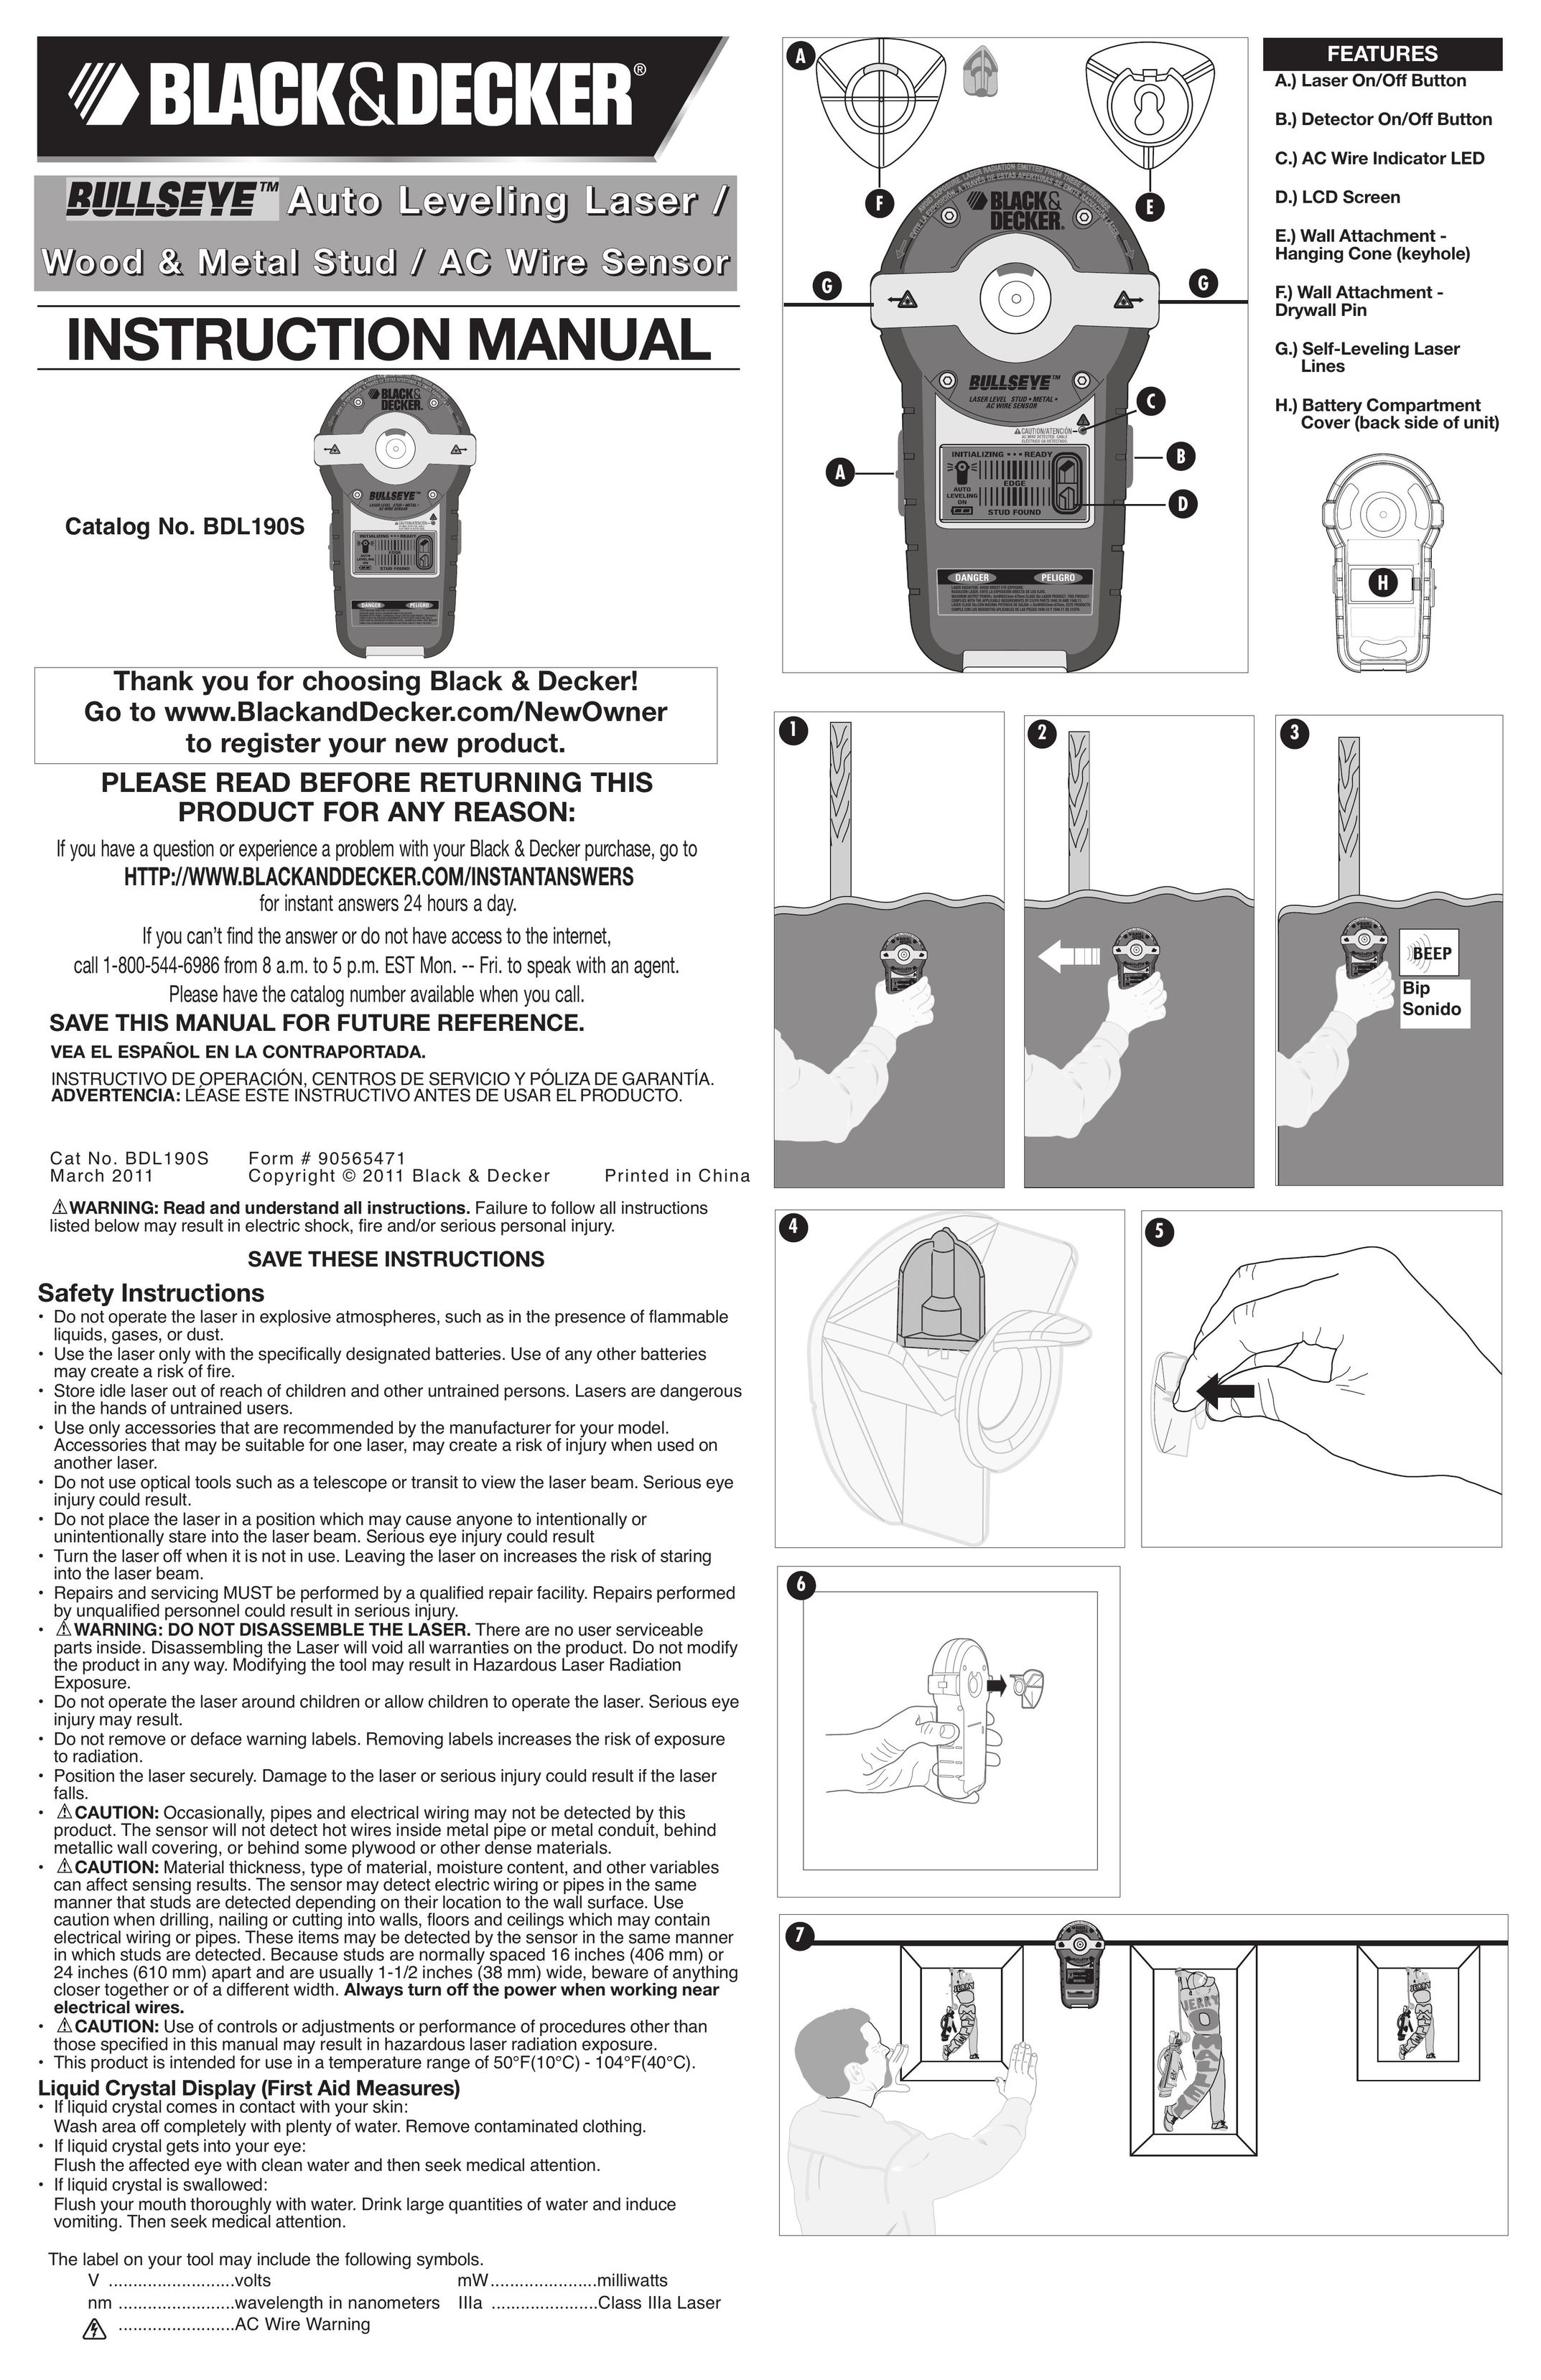 Black & Decker BDL190S Laser Level User Manual